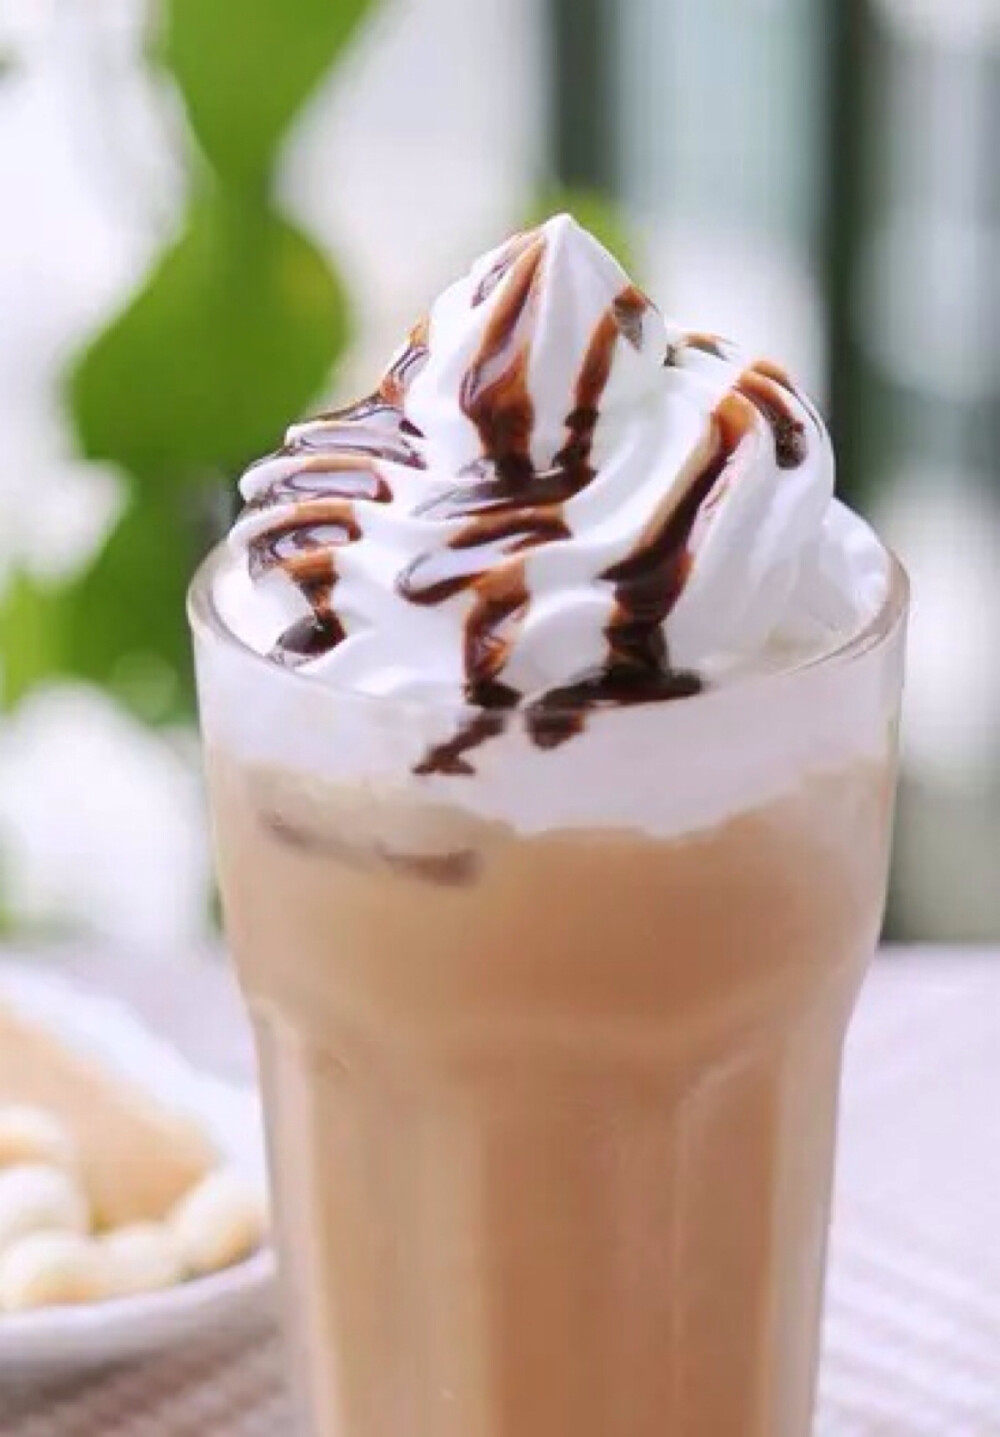 『摩卡星冰乐』 用料 巧克力酱 15克 奶粉 5克 速溶咖啡 10克 牛奶